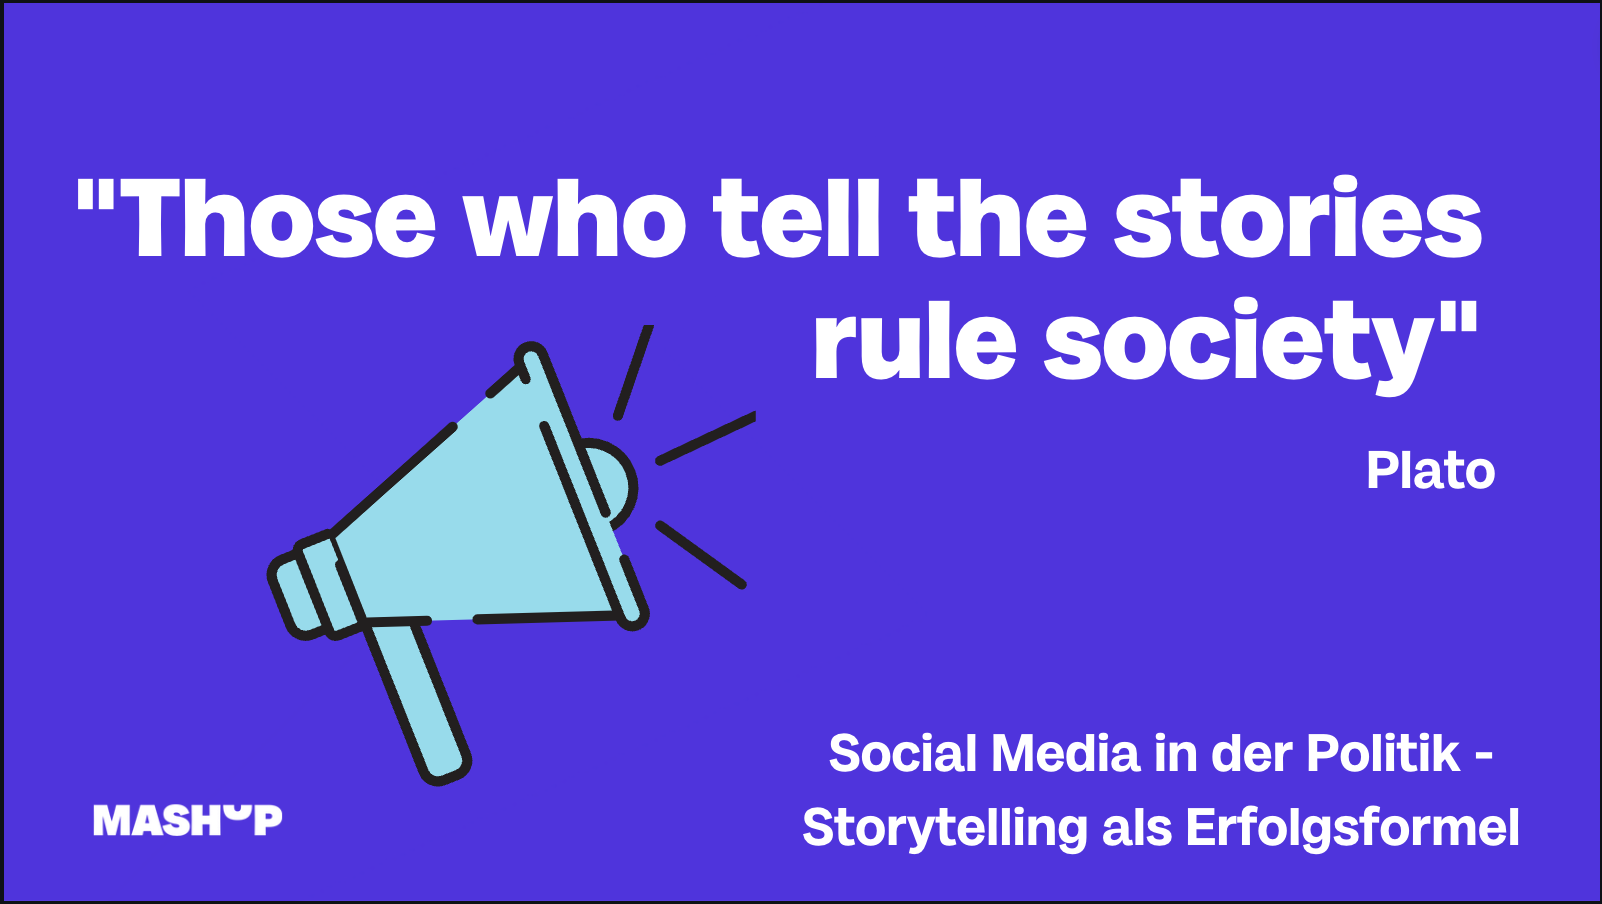 Social Media in der Politik: Storytelling als Erfolgsformel